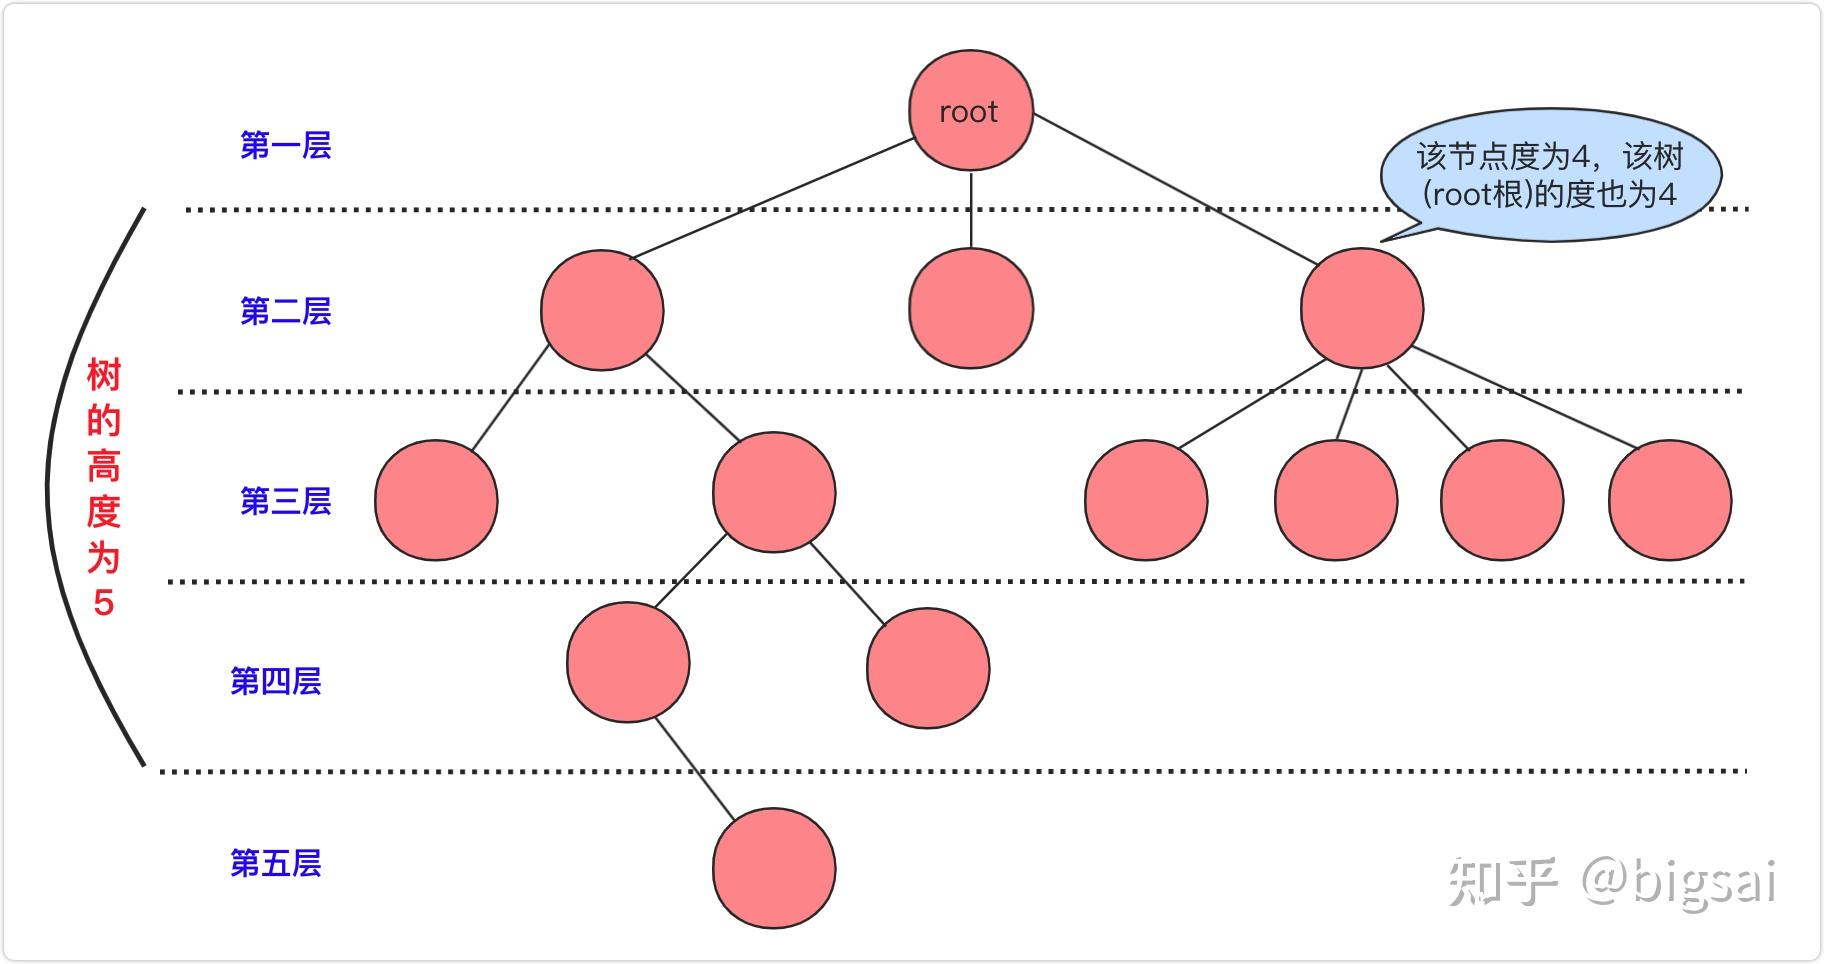 二叉排序树的基本性质_二叉排序树的定义和特性